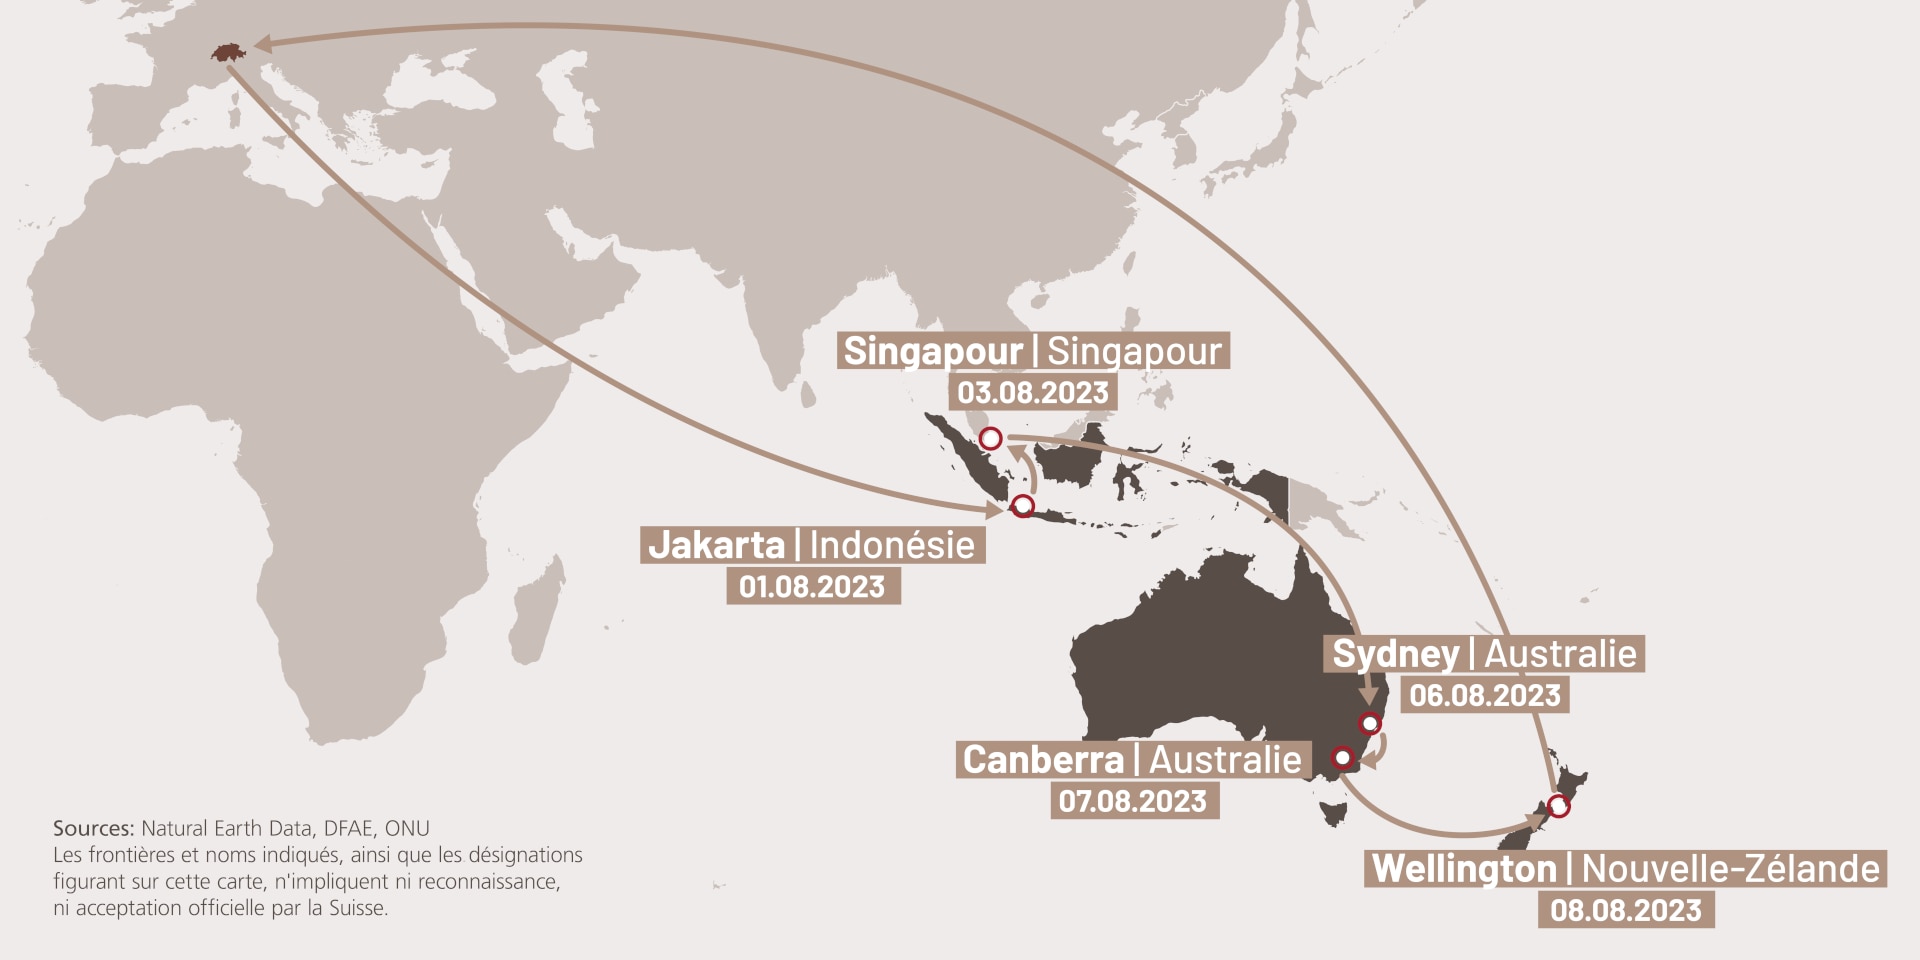 Infographie qui présente les étapes du voyage d’Ignazio Cassis en Indonésie, à Singapour, en Australie et en Nouvelle-Zélande.